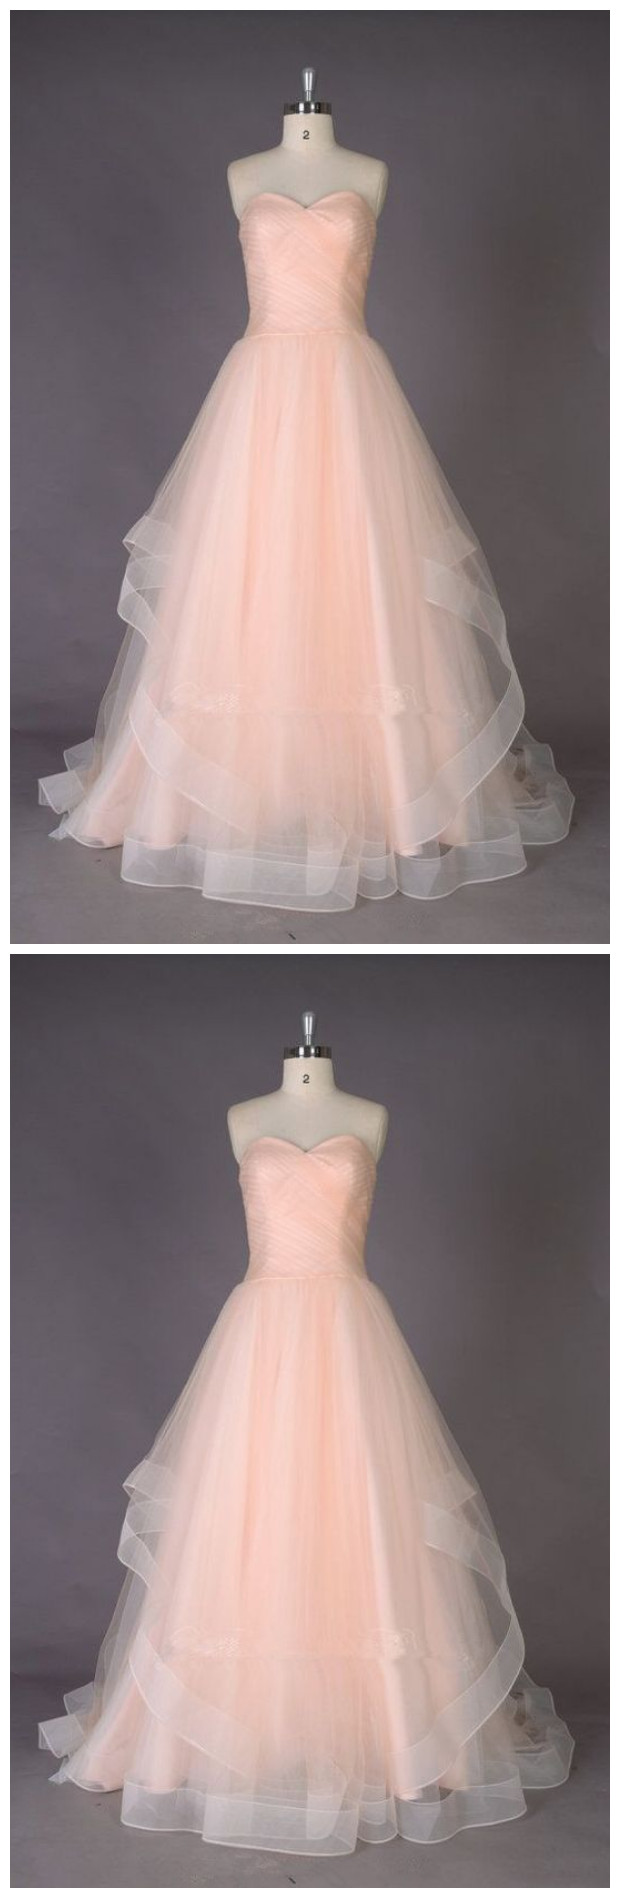 Sweetheart Long Prom Dress,lovely Light Pink Handmade Tulle Sweetheart Prom Gown, Prom Gowns